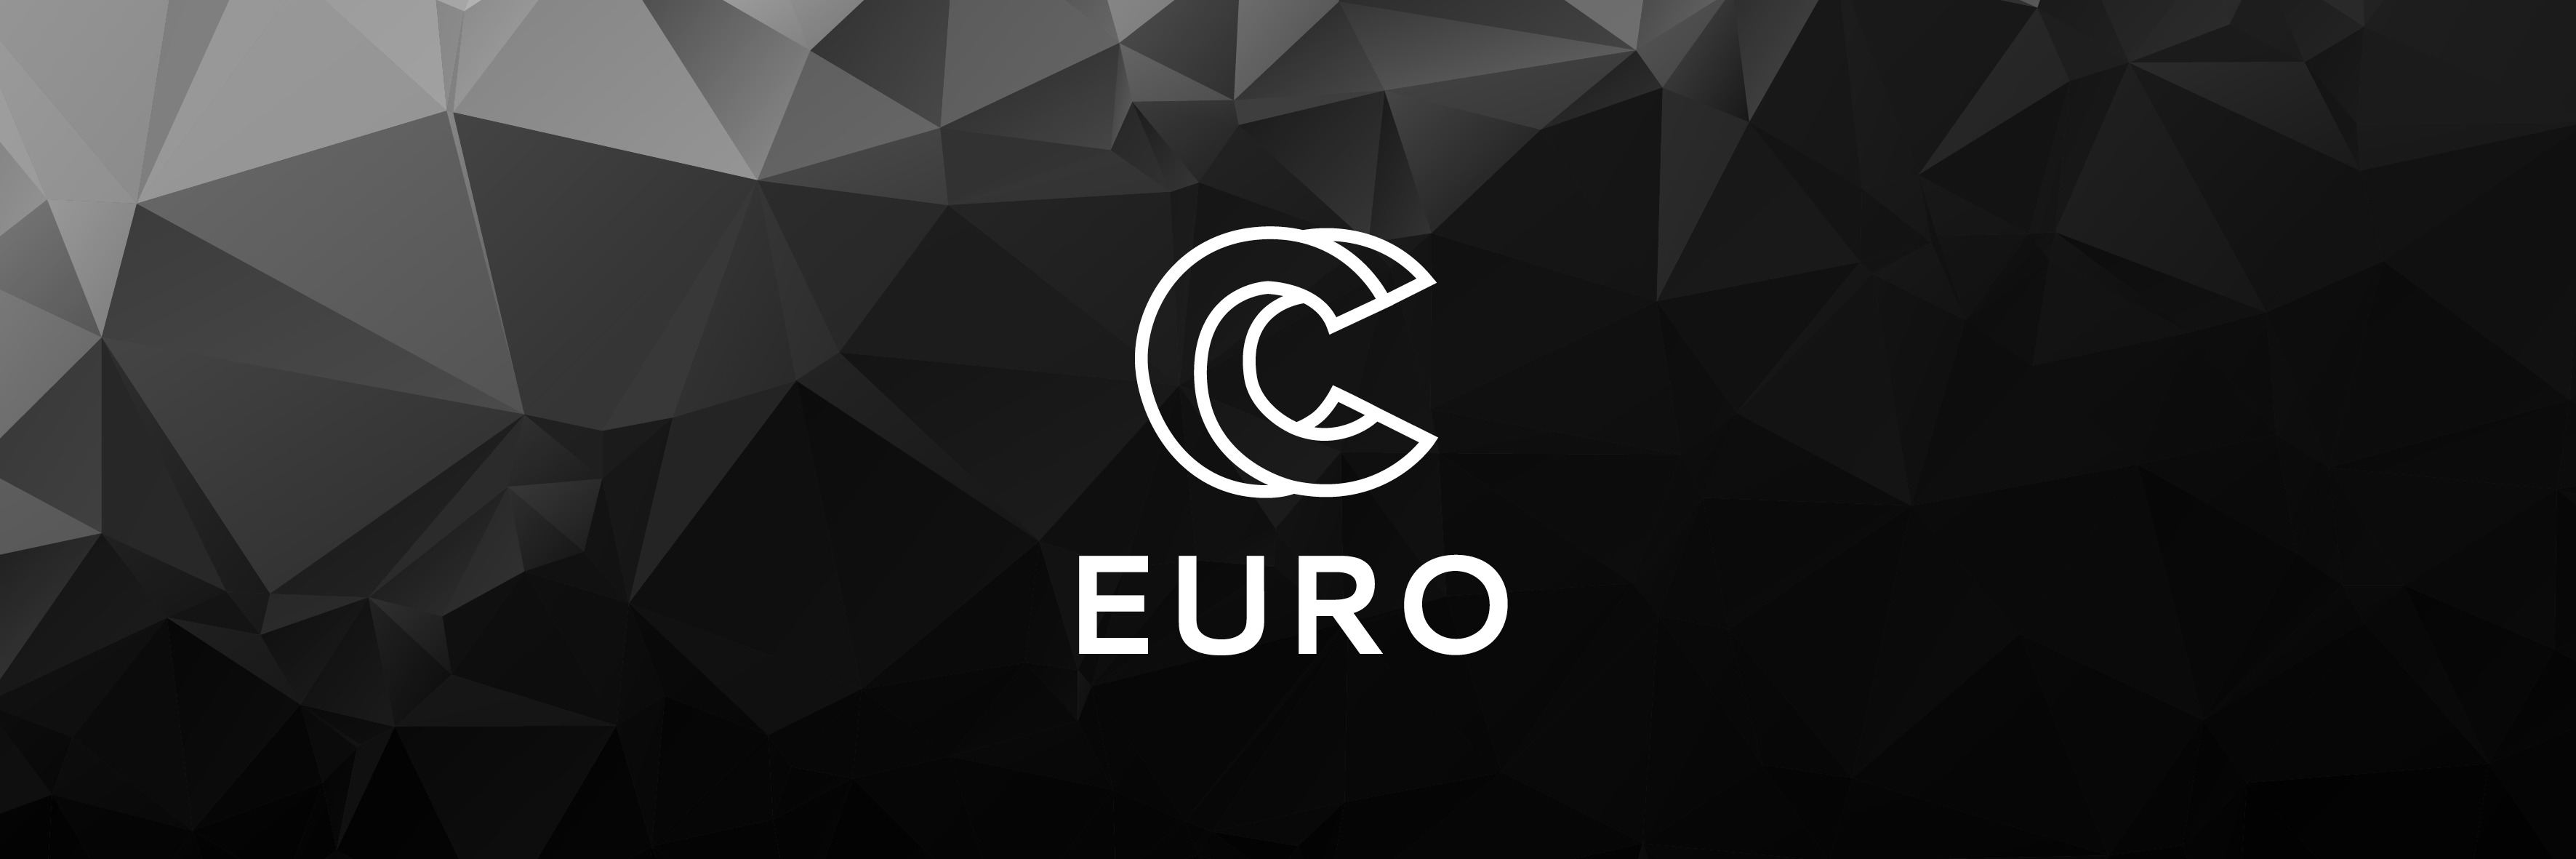 EUROCC Newsletter (March)